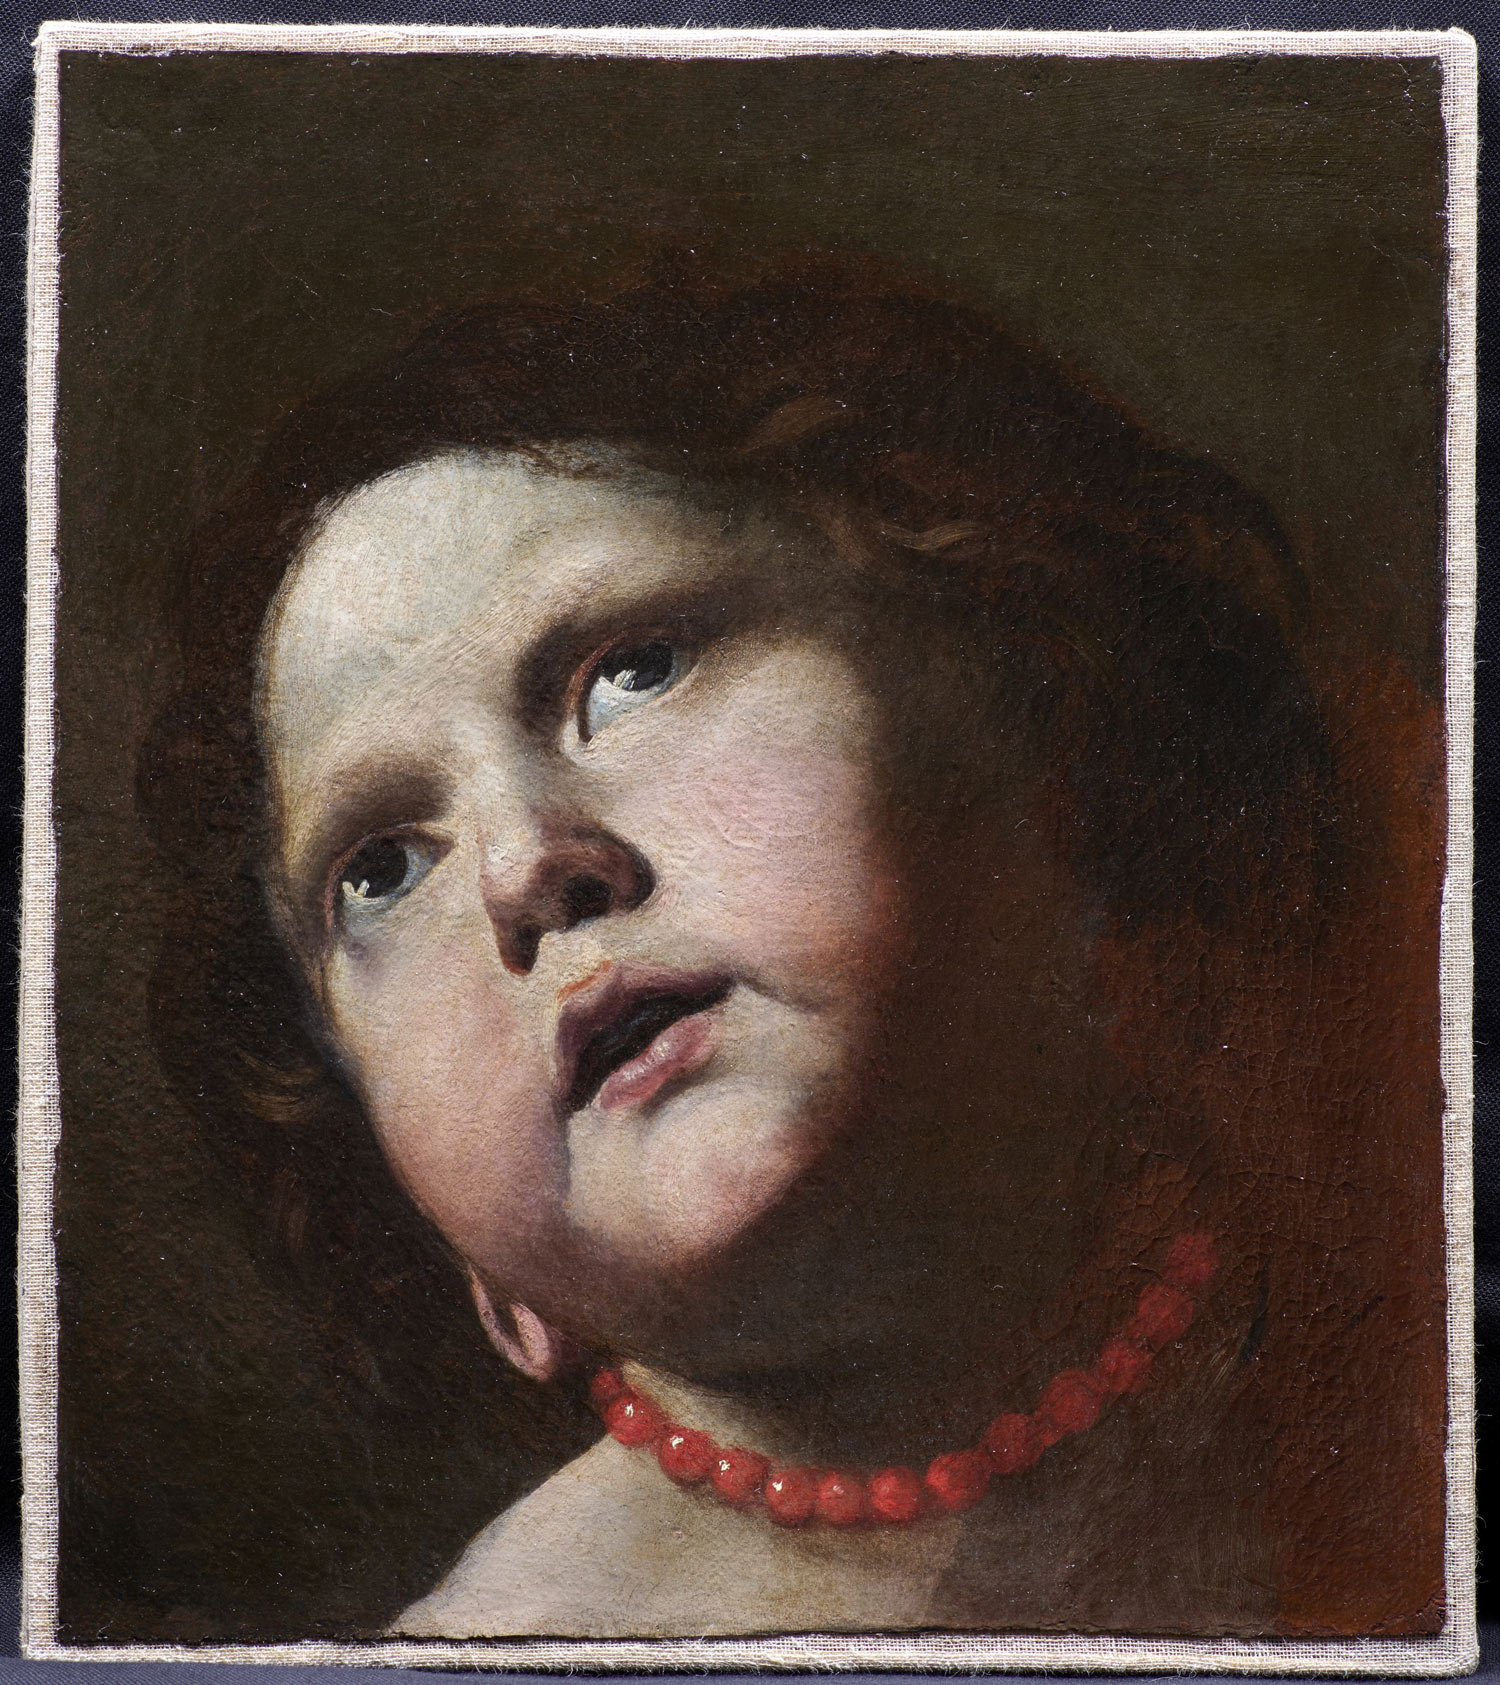 Mattia Preti, Testa di bambina con collana di corallo (1645-1650; olio su tela, 32 x 28,5 cm; Roma, Gallerie Nazionale d'Arte Antica, Galleria Corsini) 